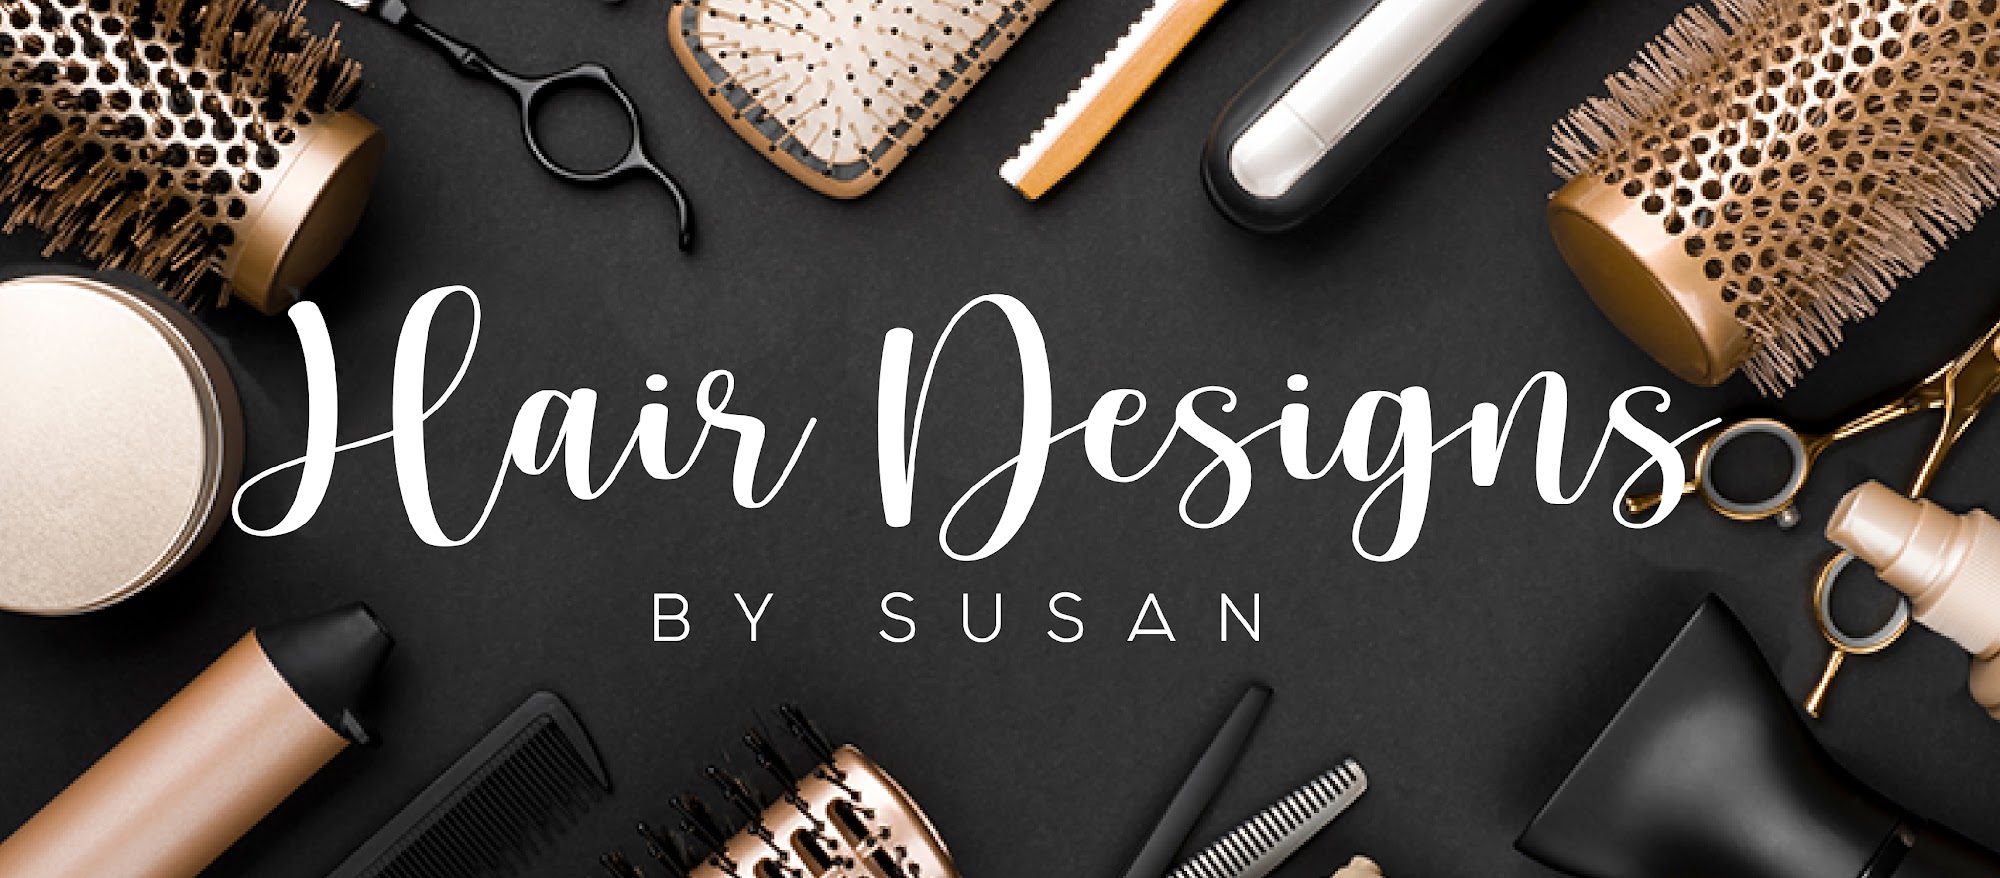 Hair Designs by Susan